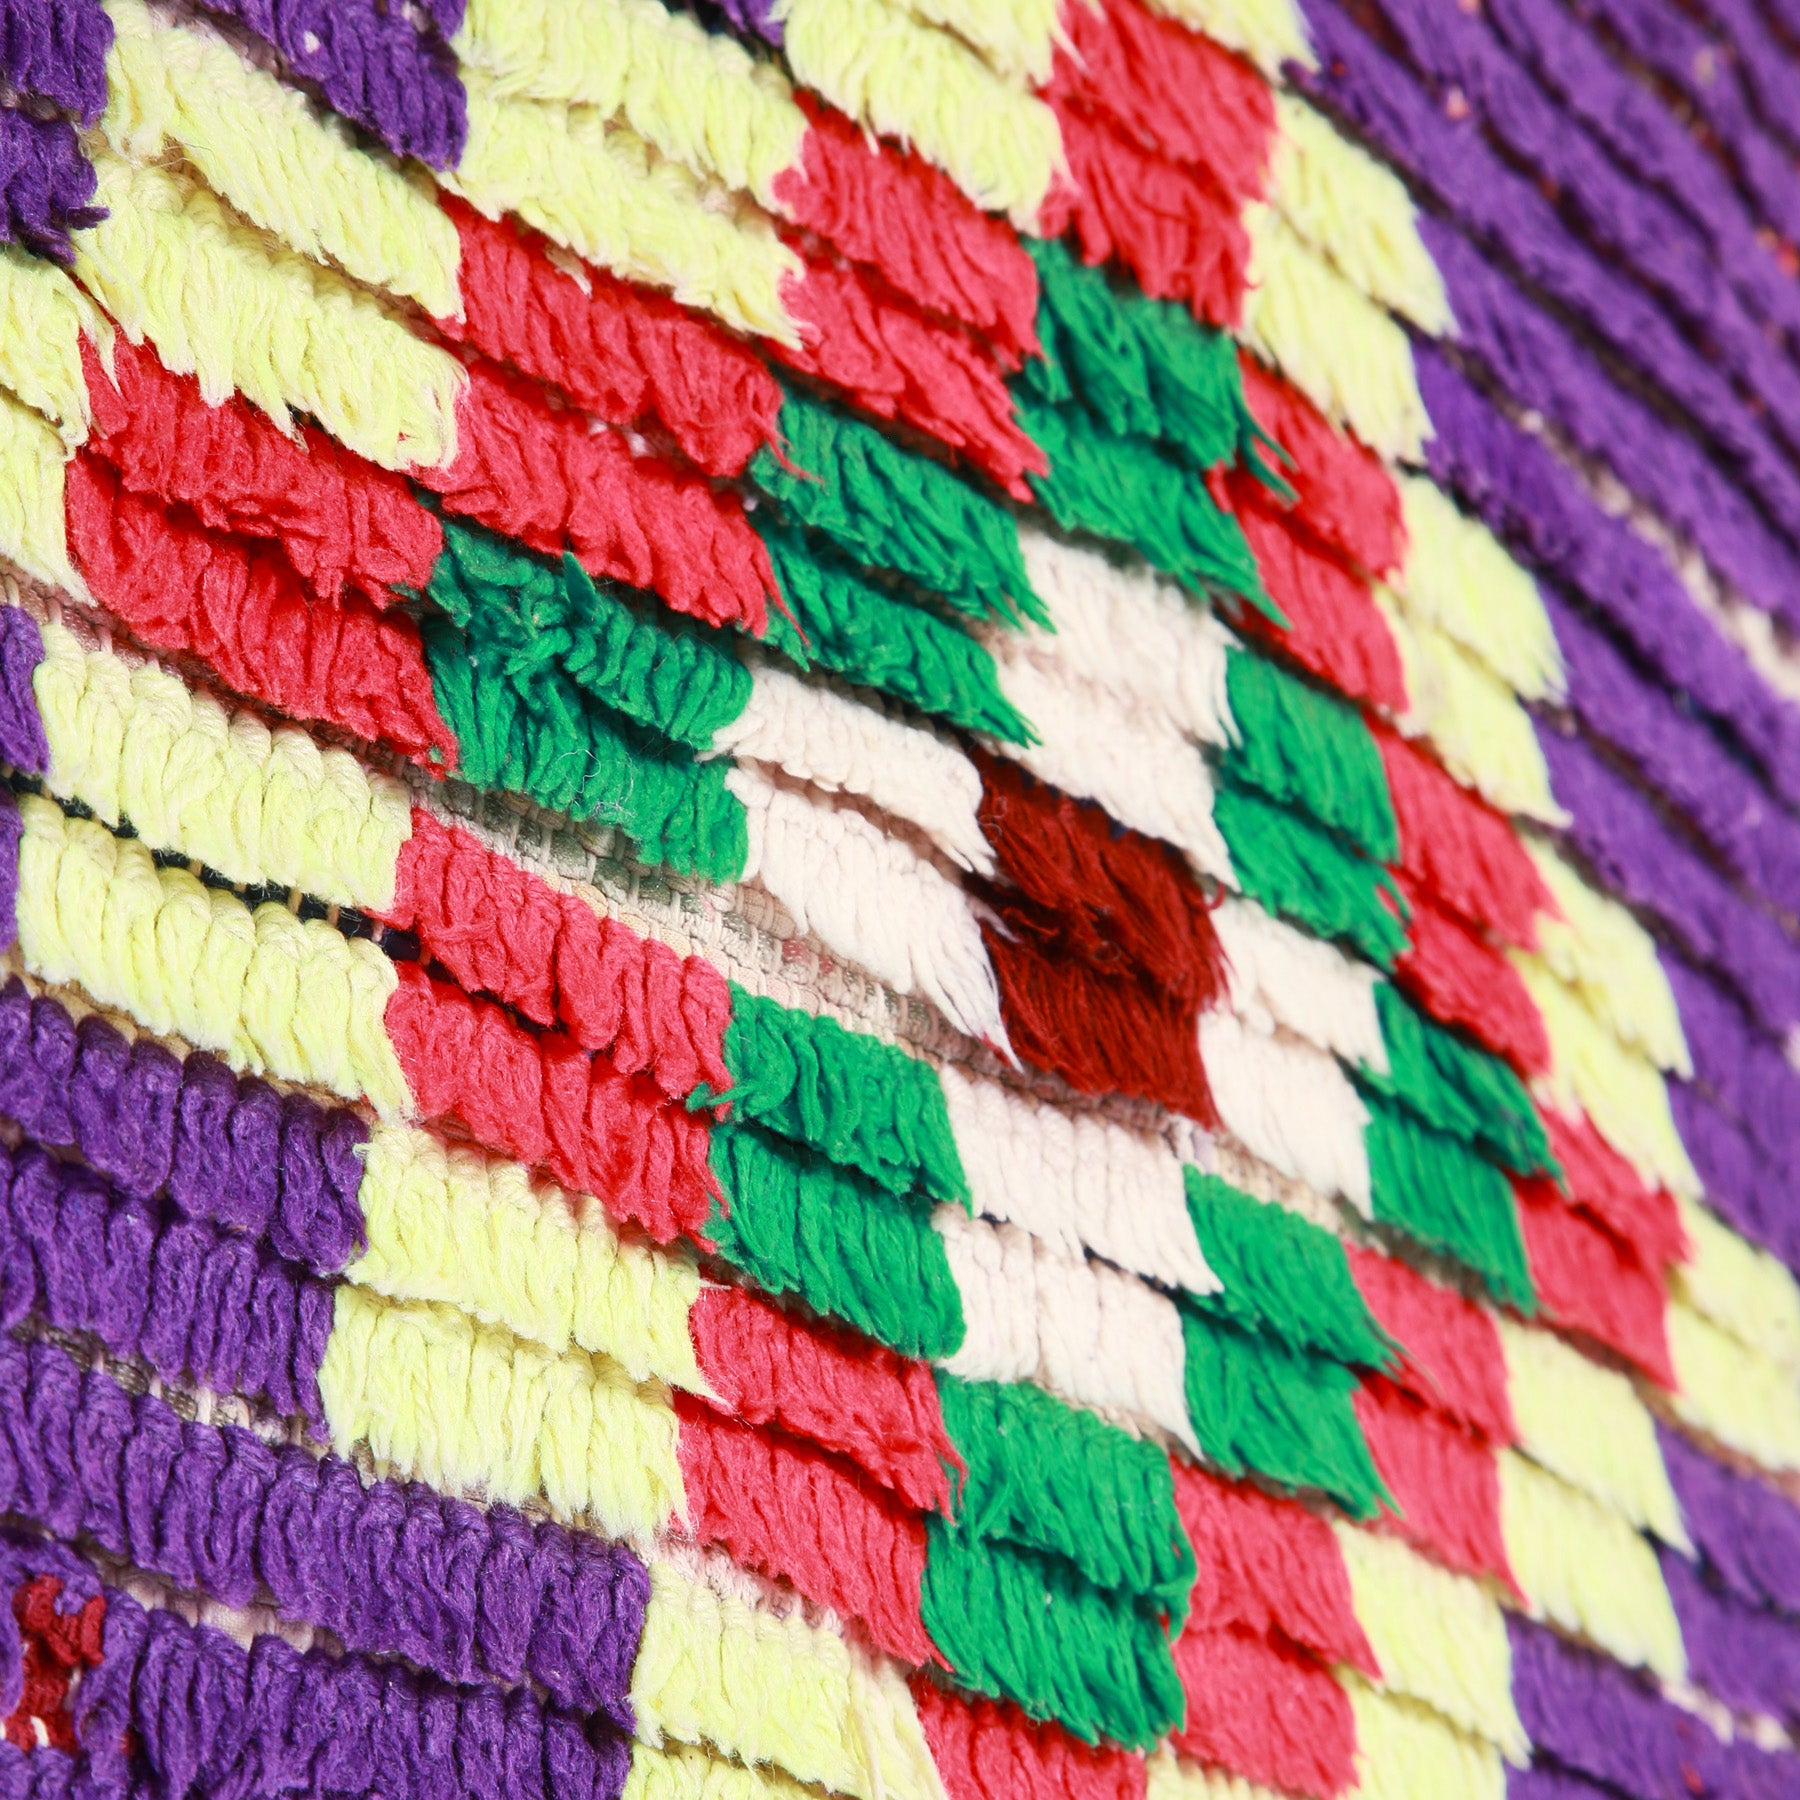 dettaglio della lana annodata in quandrati colorati che formano un grande rombo